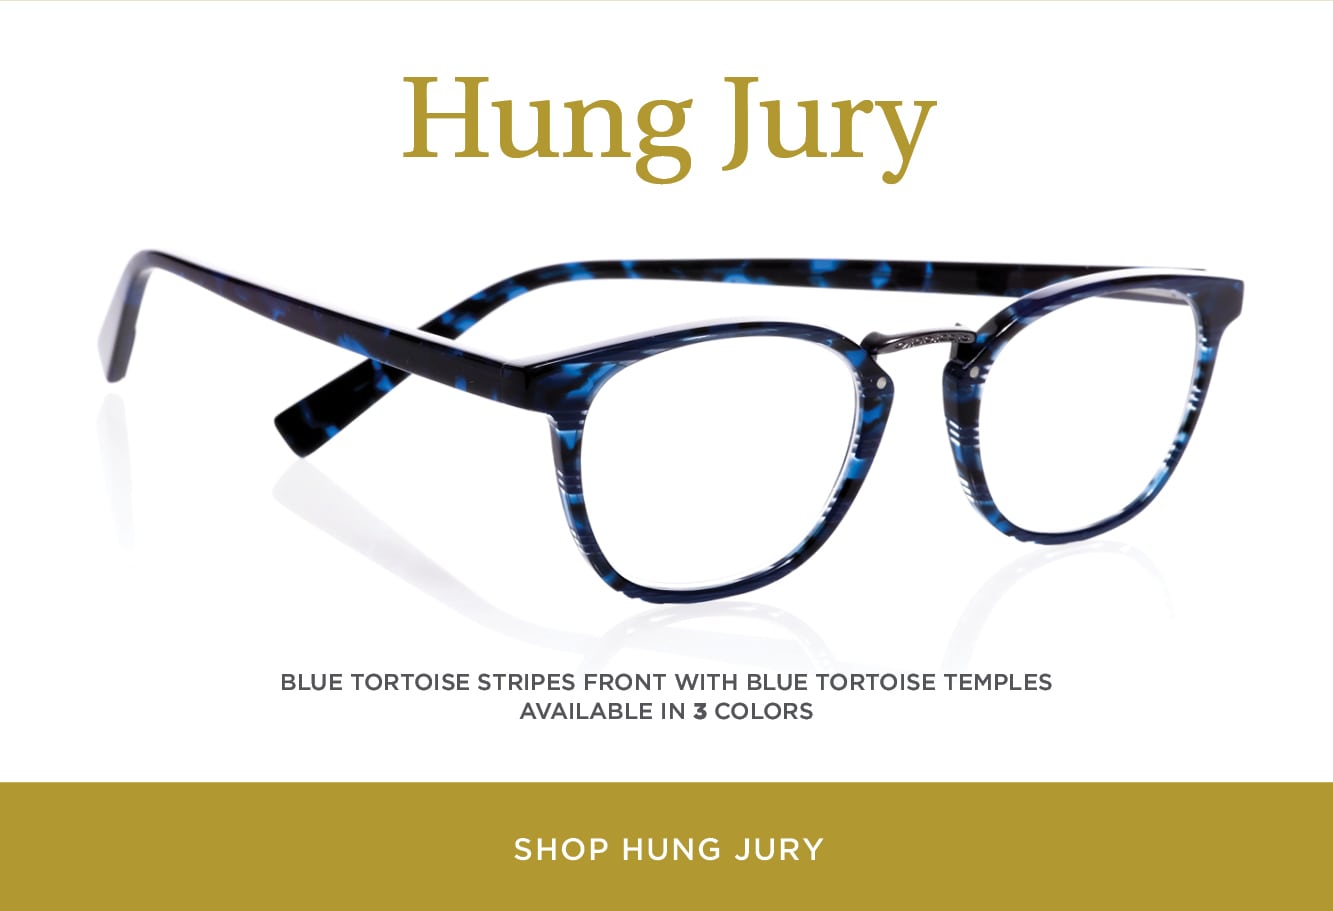 Shop Hung Jury